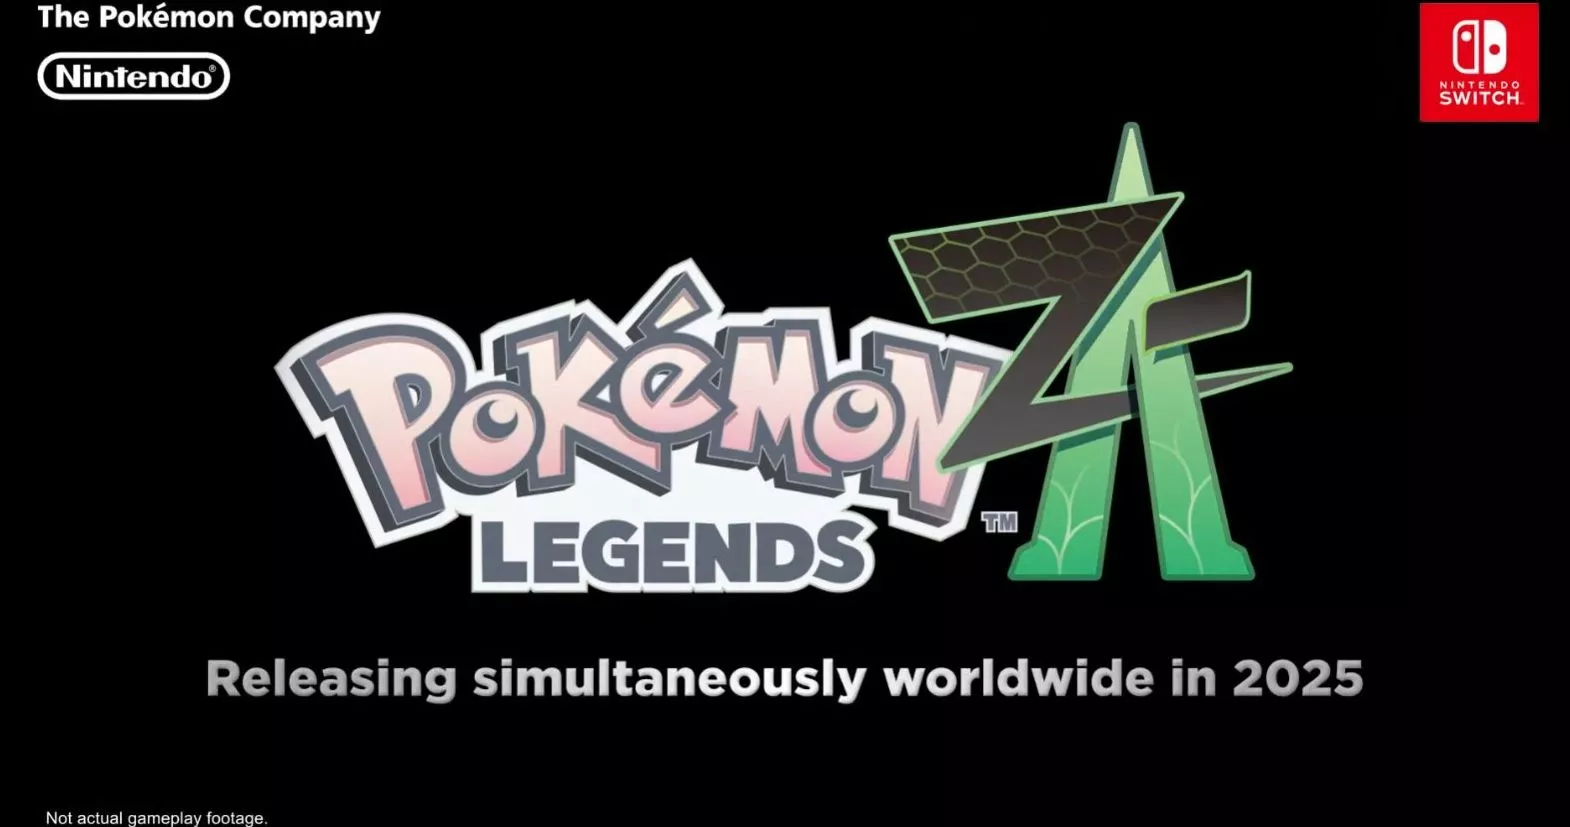 Pokémon Legenden Z-A für Nintendo Switch angekündigt Heropic